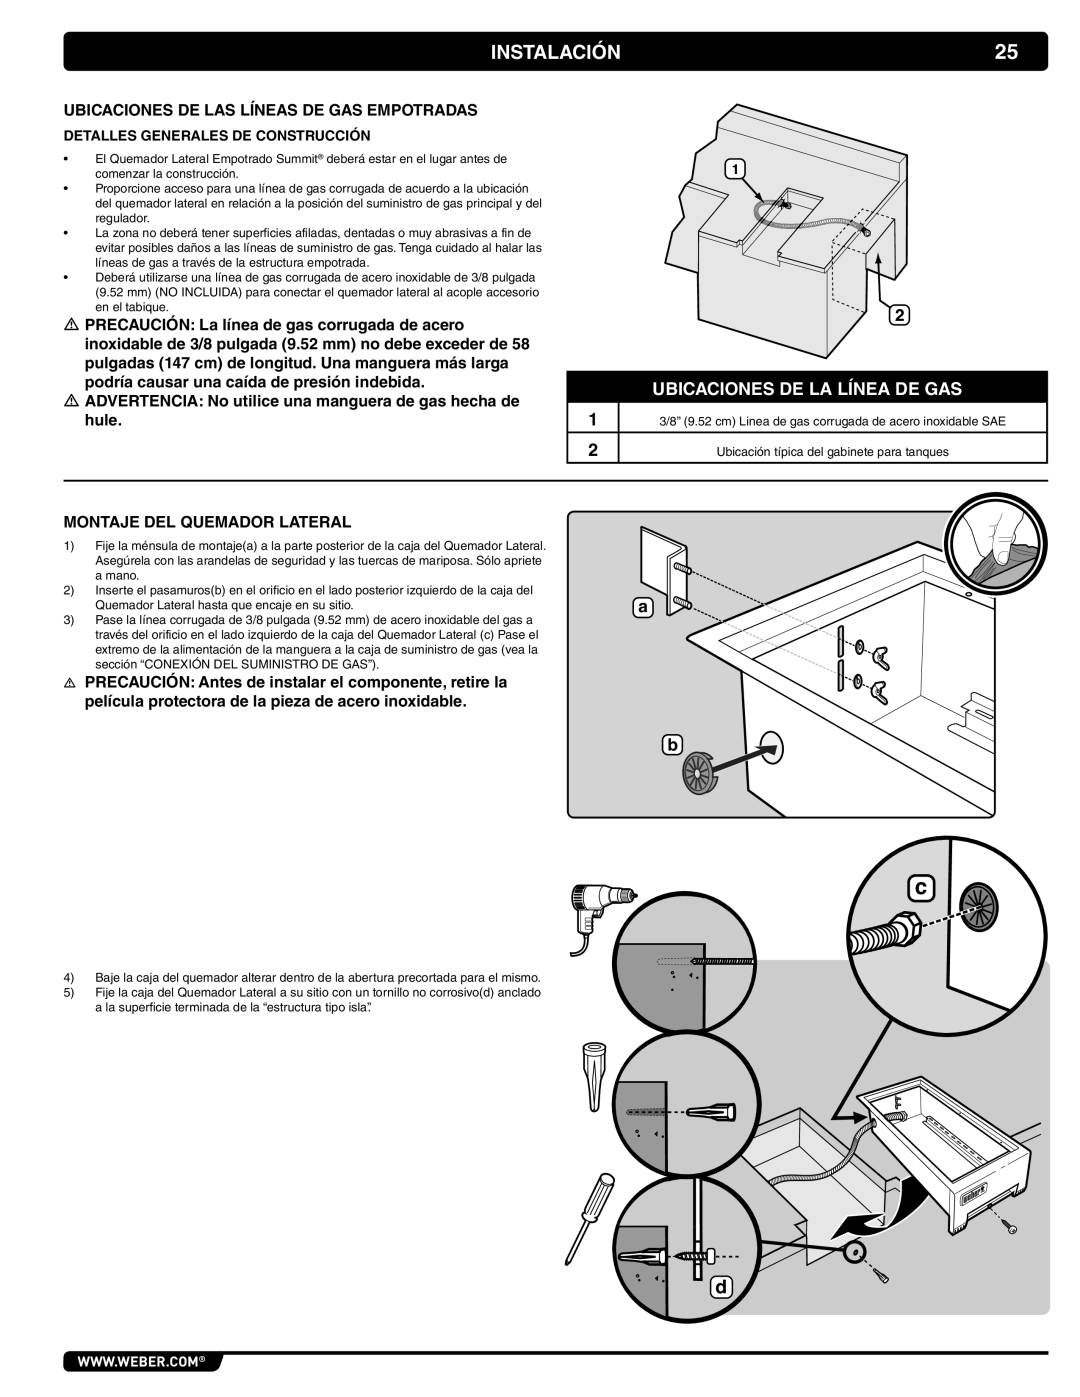 Weber 56069 manual Instalación, Ubicaciones De La Línea De Gas, Ubicaciones De Las Líneas De Gas Empotradas 